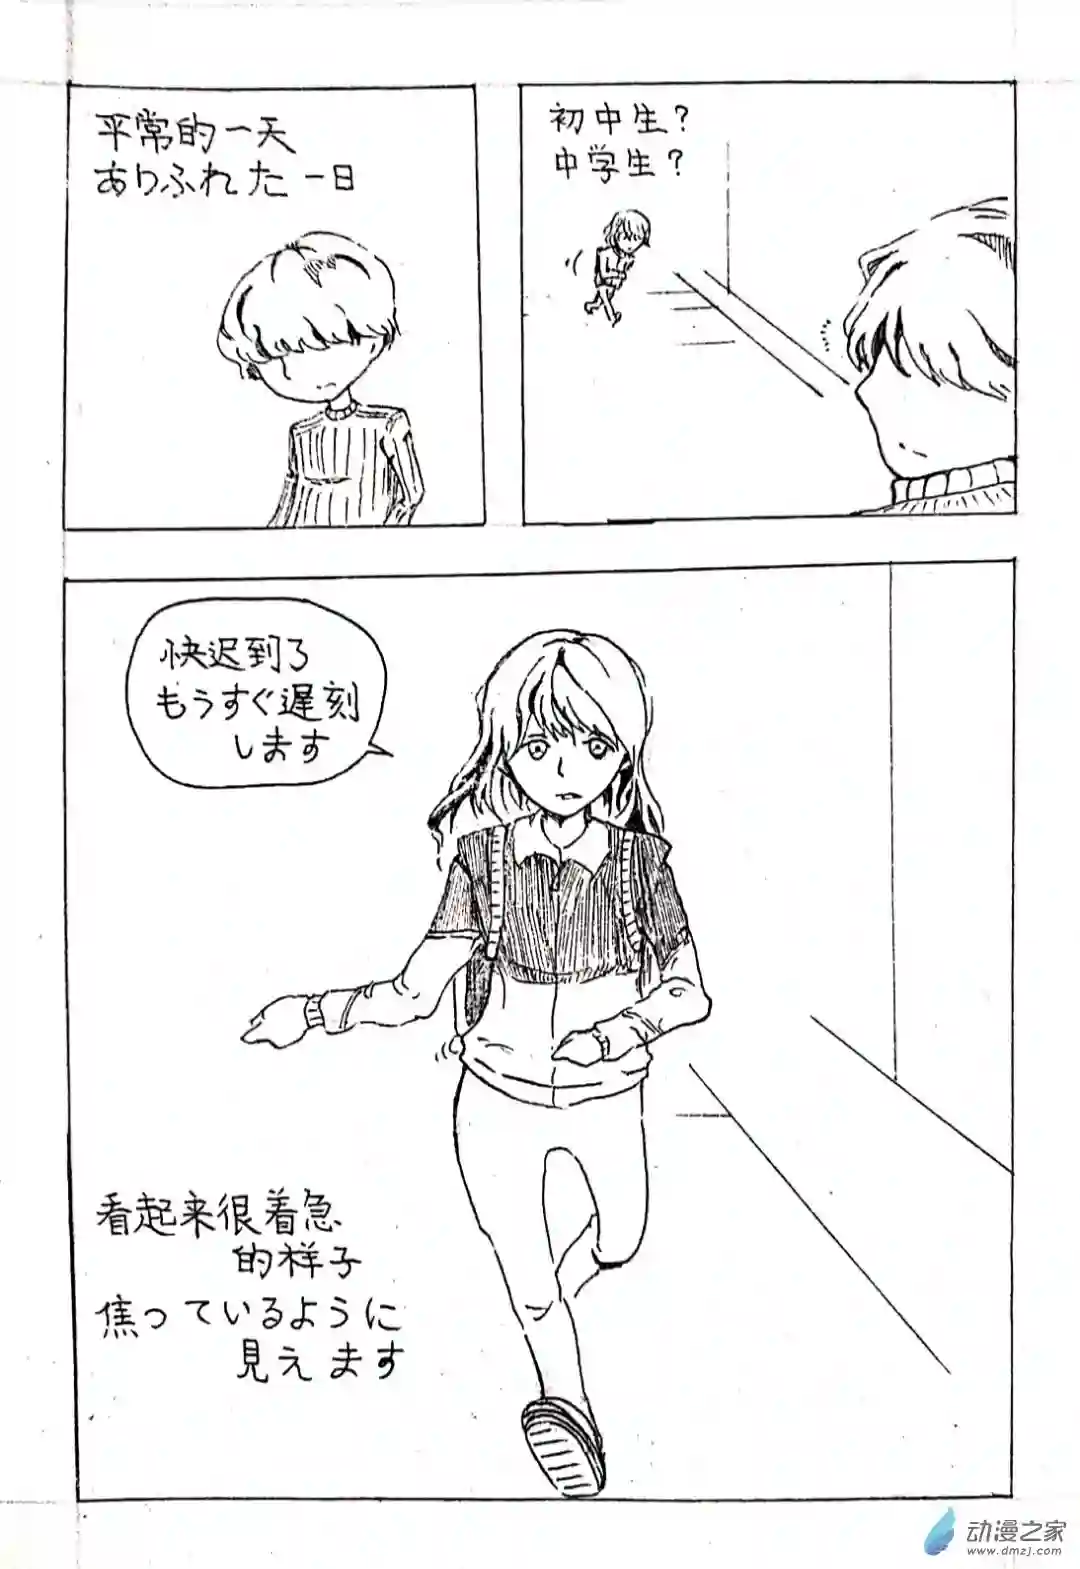 日刊漫画04 少年赏妹篇一